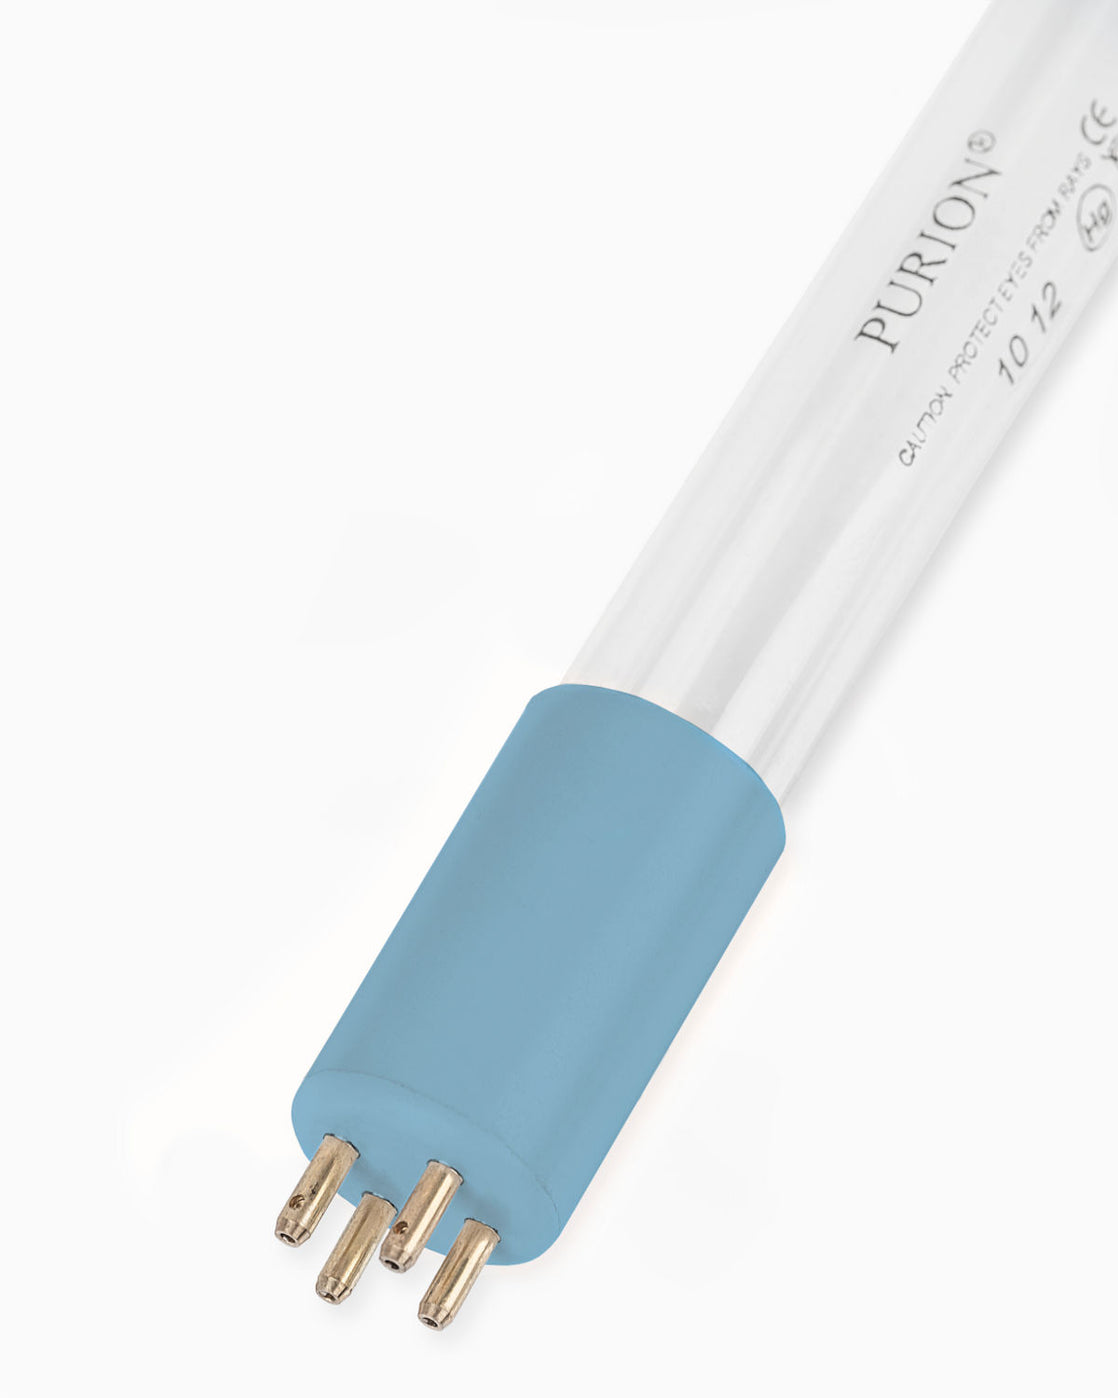 Eine Blaulichtröhre mit einer UV-C-Anlage auf weißem Hintergrund.
Produktname: Kompaktsystem aktiv
Markenname: PURION GmbH

Eine Kompaktsystem-Aktivlichtröhre mit einer UV-C-Anlage auf weißem Hintergrund, hergestellt von der PURION GmbH.